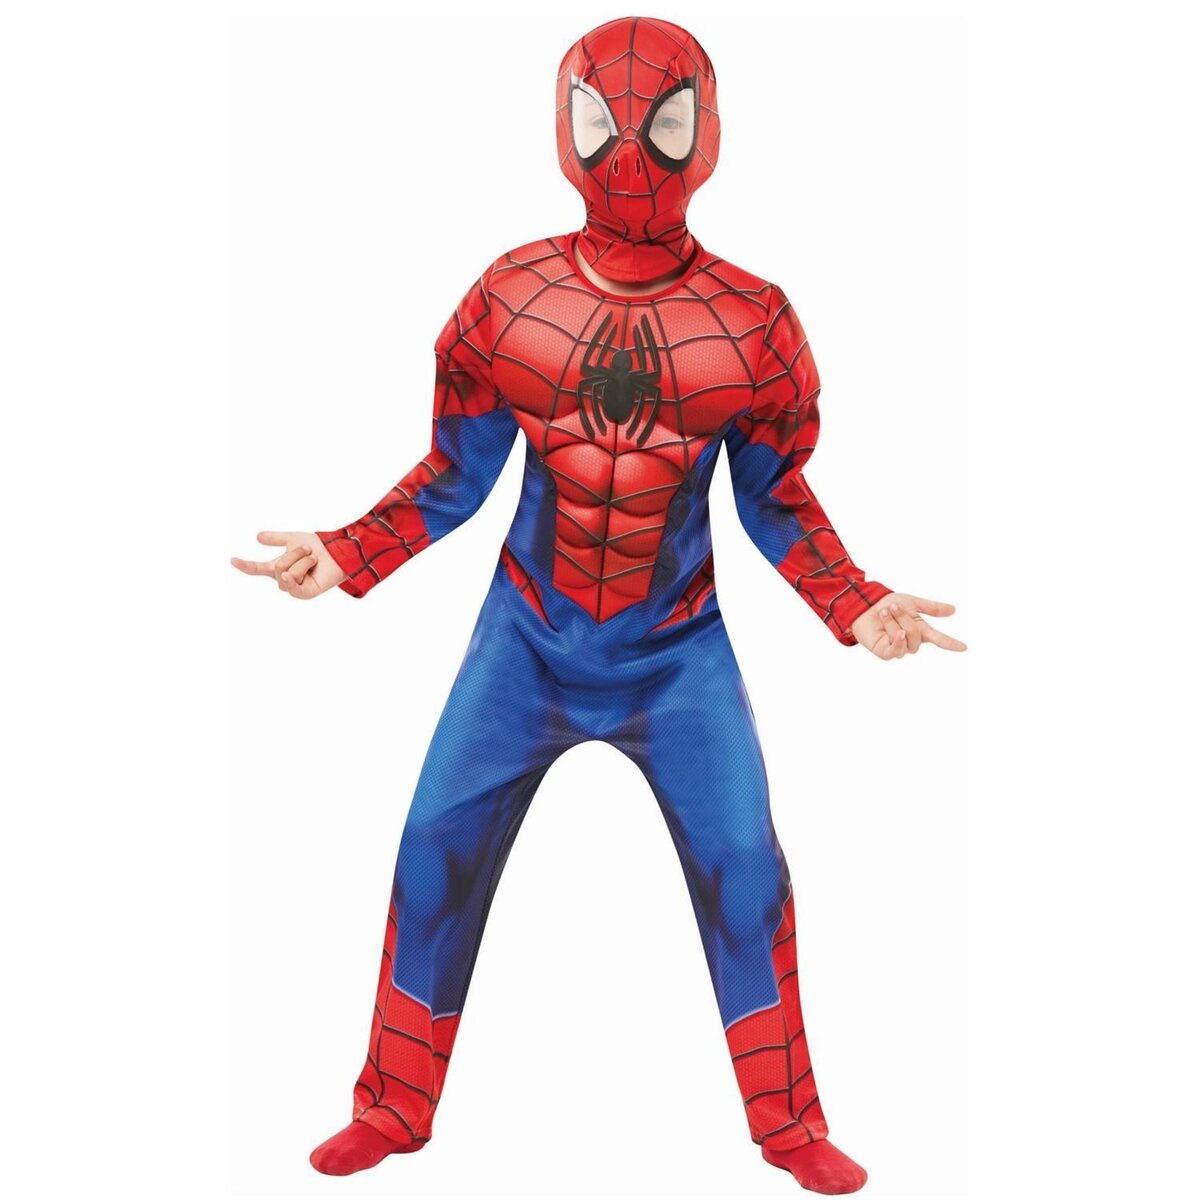 Déguisement Spiderman luxe 3/4 ans Rubie S : King Jouet, Déguisements Rubie  S - Fêtes, déco & mode enfants